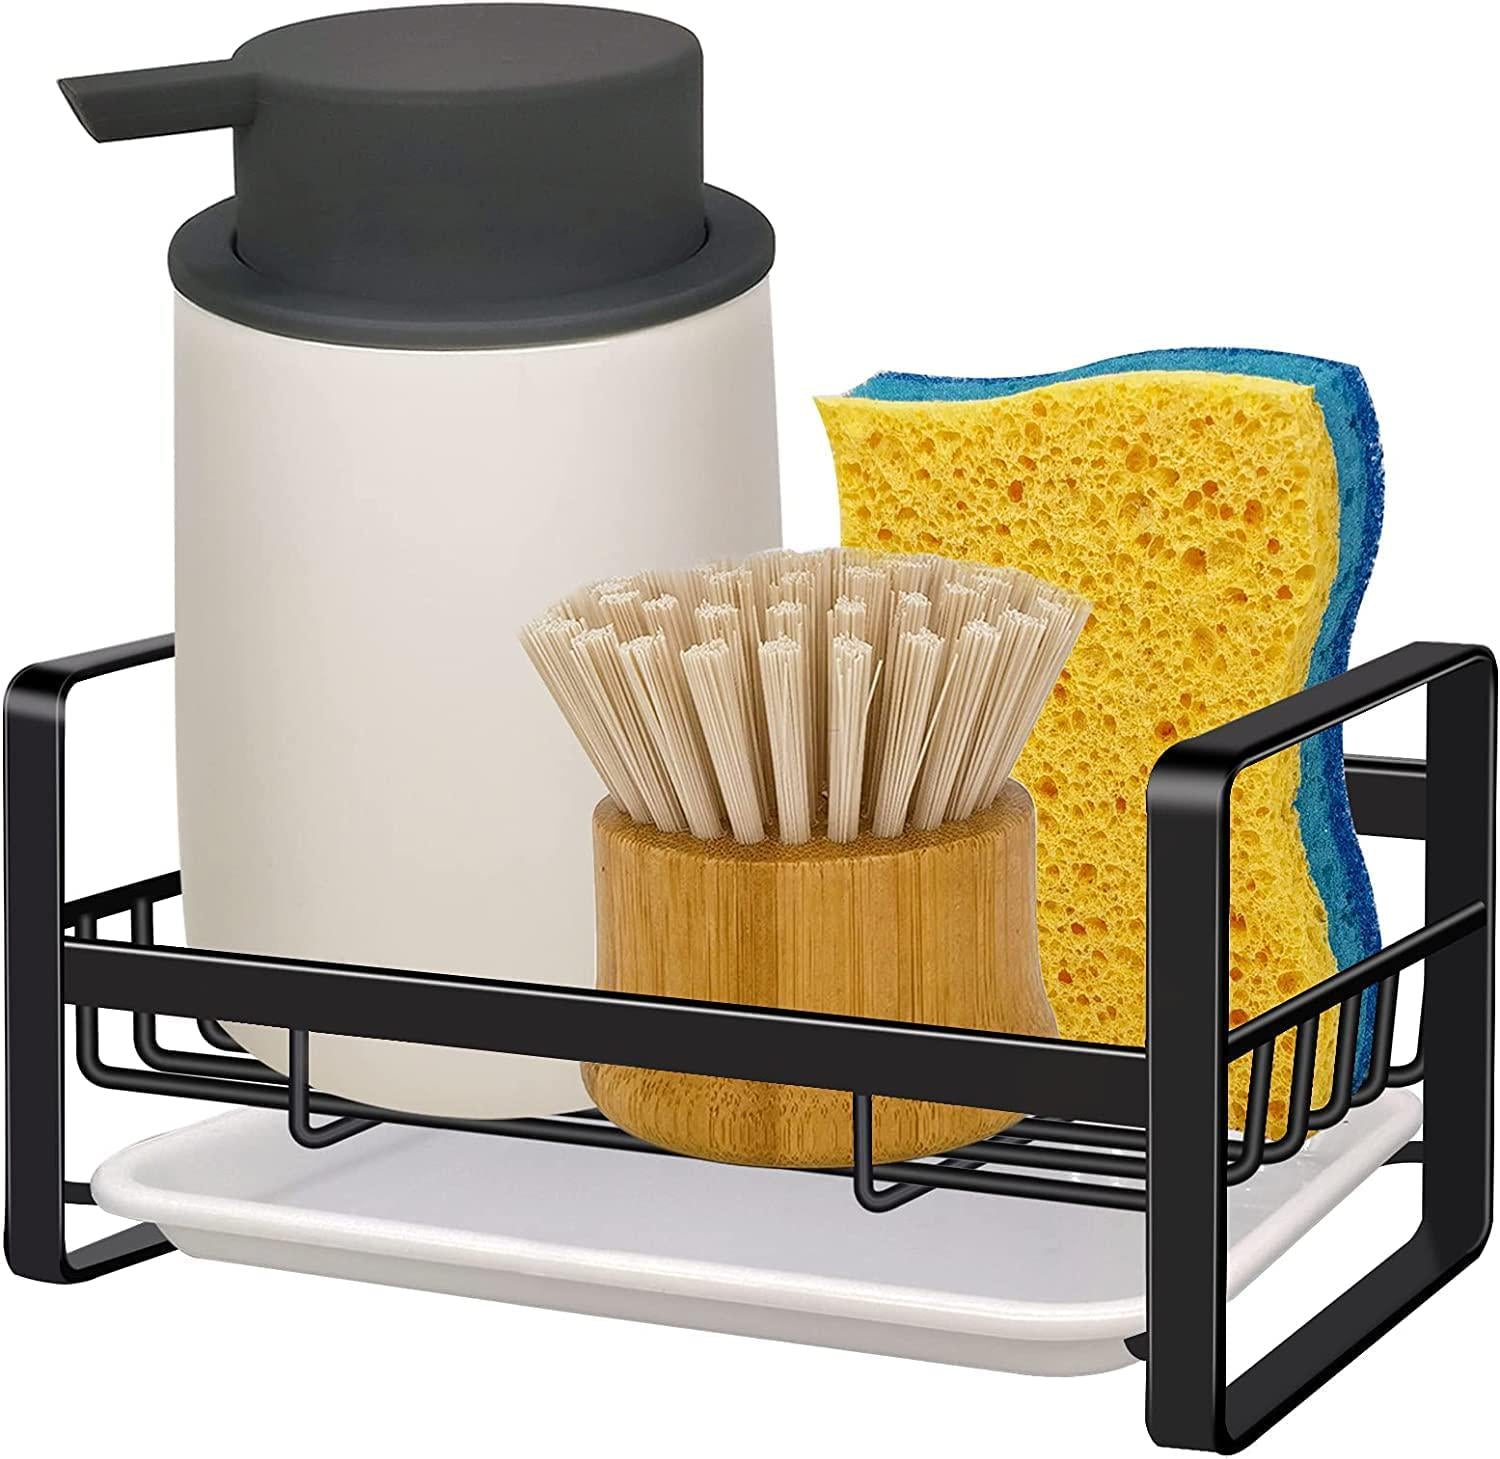 JunKaixx, Kitchen Sink Caddy Sponge Holder - Sink Caddy Organizer, Sponge Holder for Sink, Sink Tray Drainer Rack, Soap Dish Dispenser Brush Holder Storage Kitchen Accessories -Countertop or Adhesive